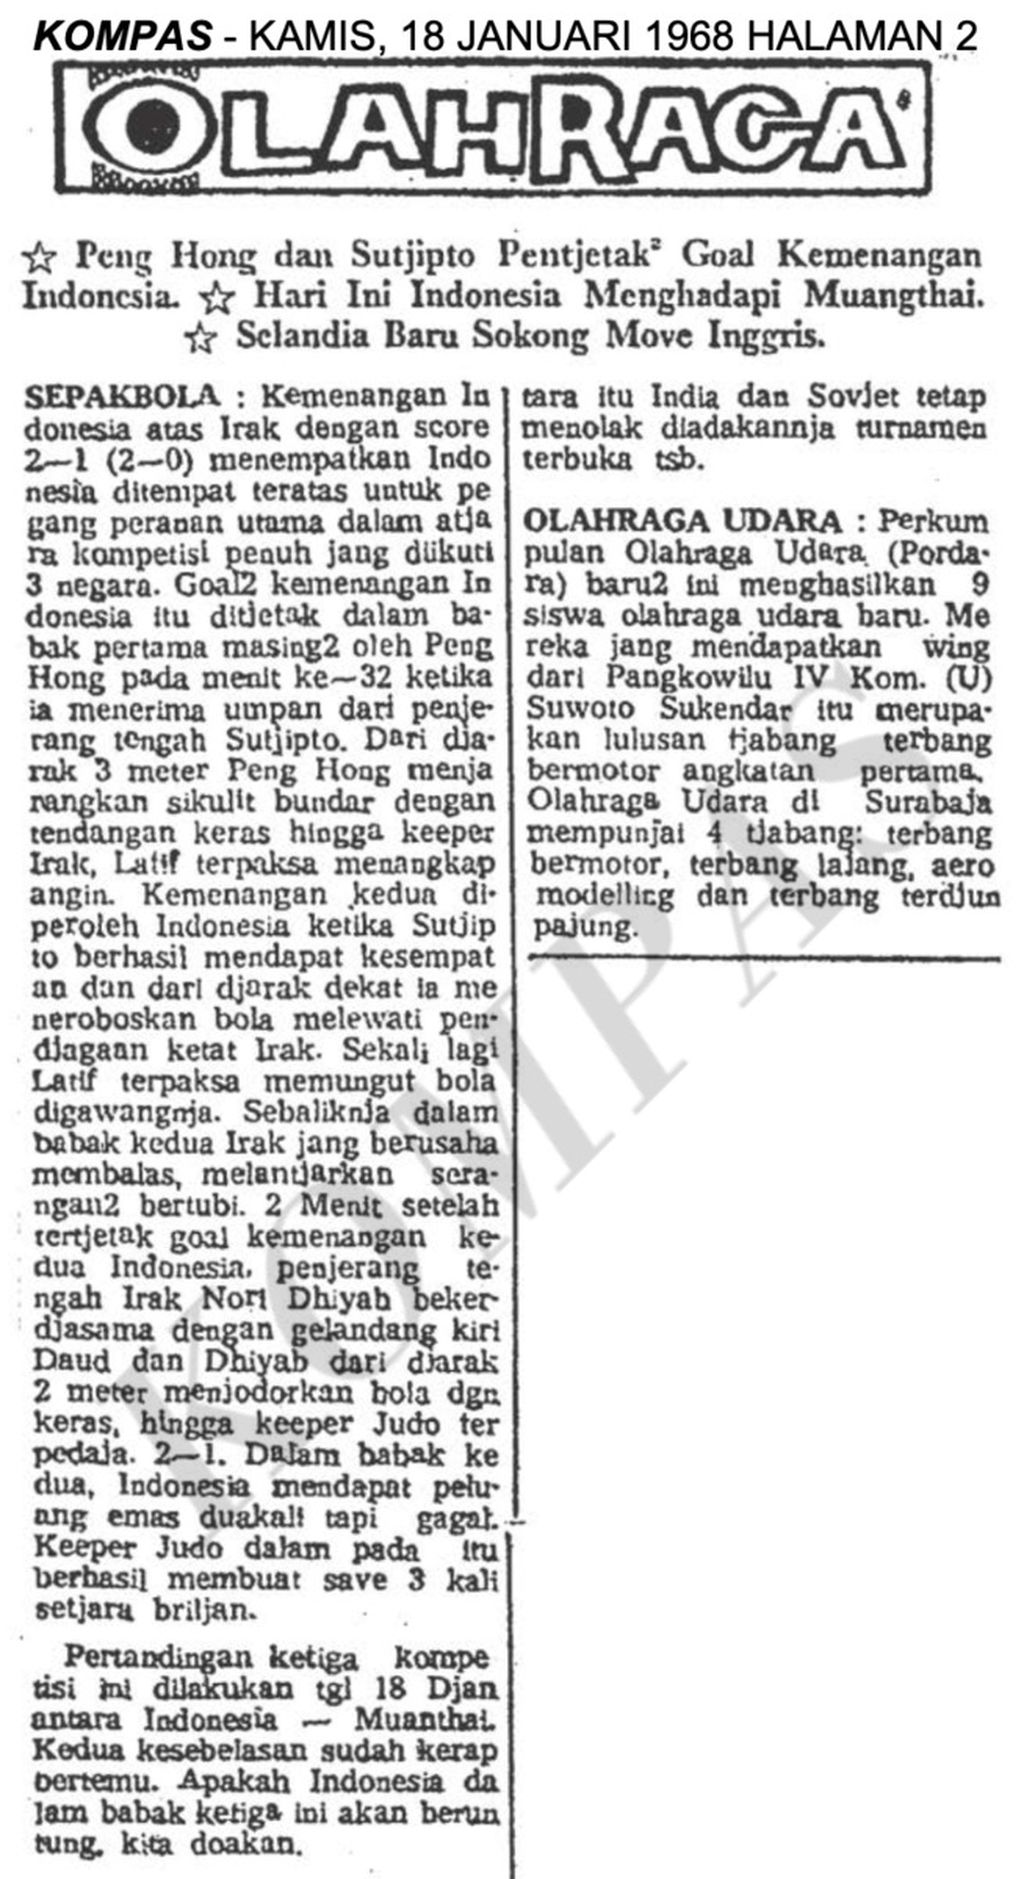 Berita <i>Kompas</i> edisi 18 Januari 1968 tentang duel perdana Indonesia menghadapi Irak pada Kualifikasi Olimpiade Meksiko 1968.